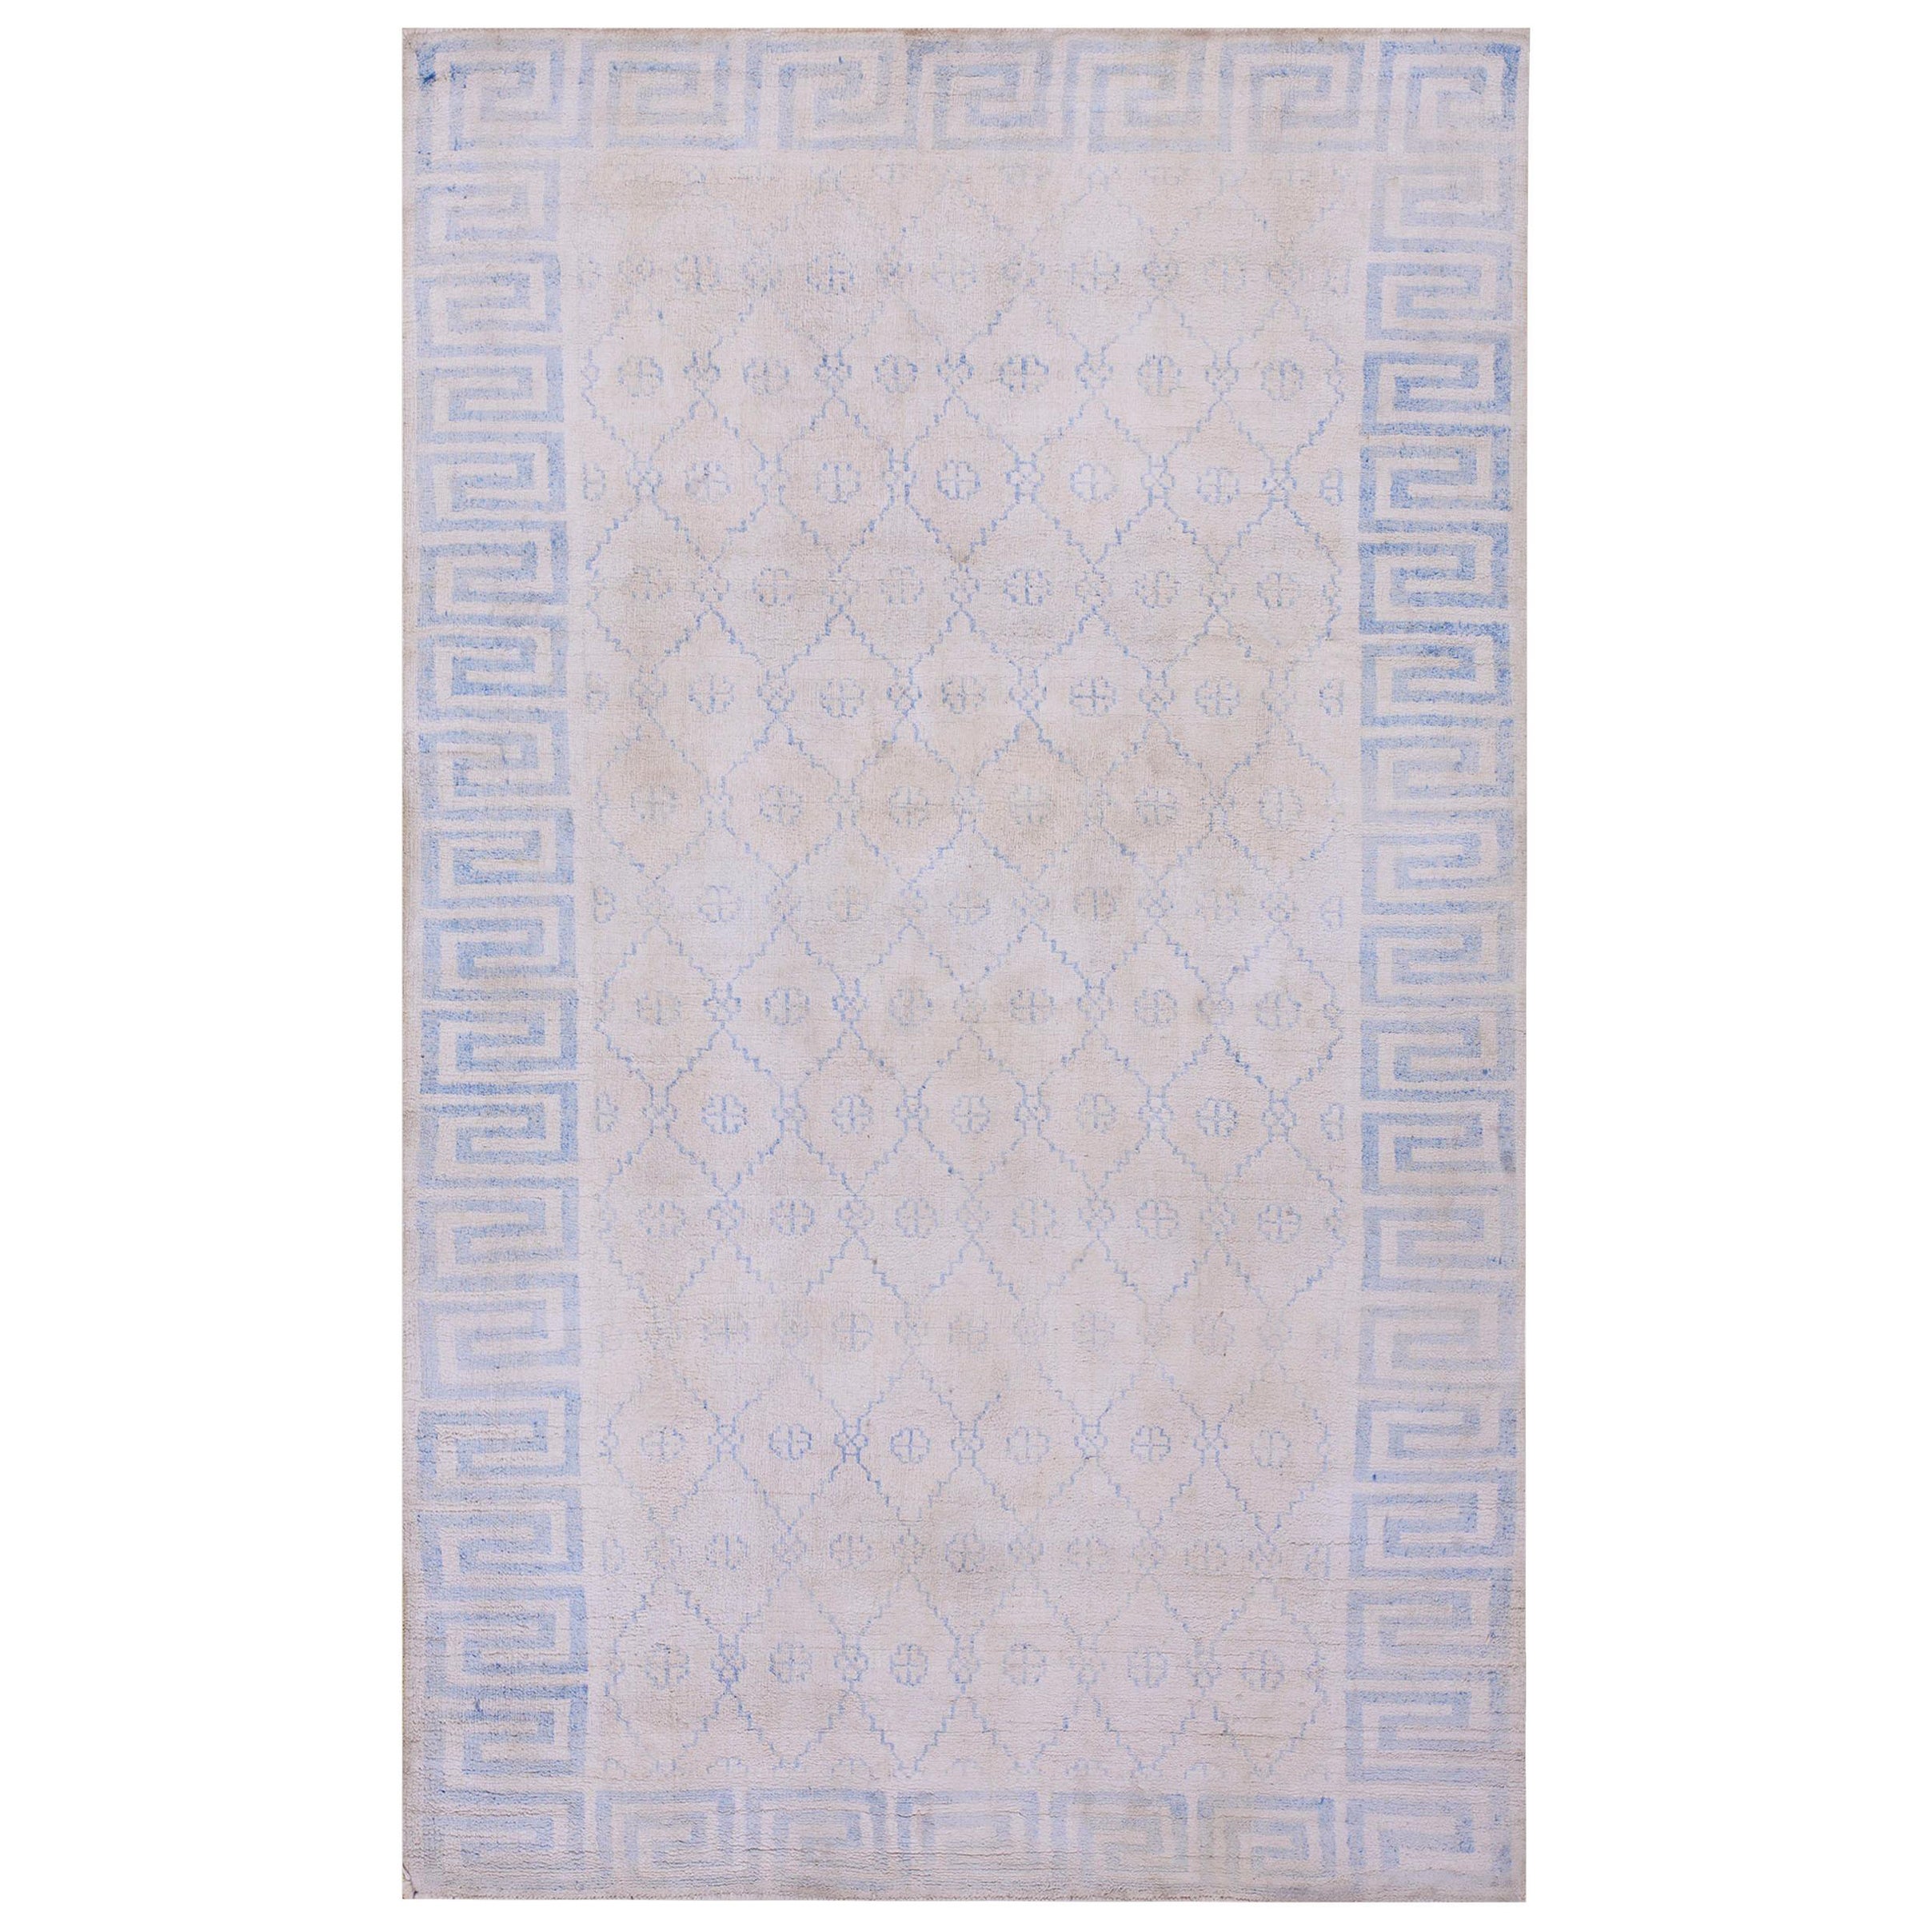 Indischer Agra-Teppich aus Baumwolle des frühen 20. Jahrhunderts ( 4'' x 6''6 - 122 x 198)